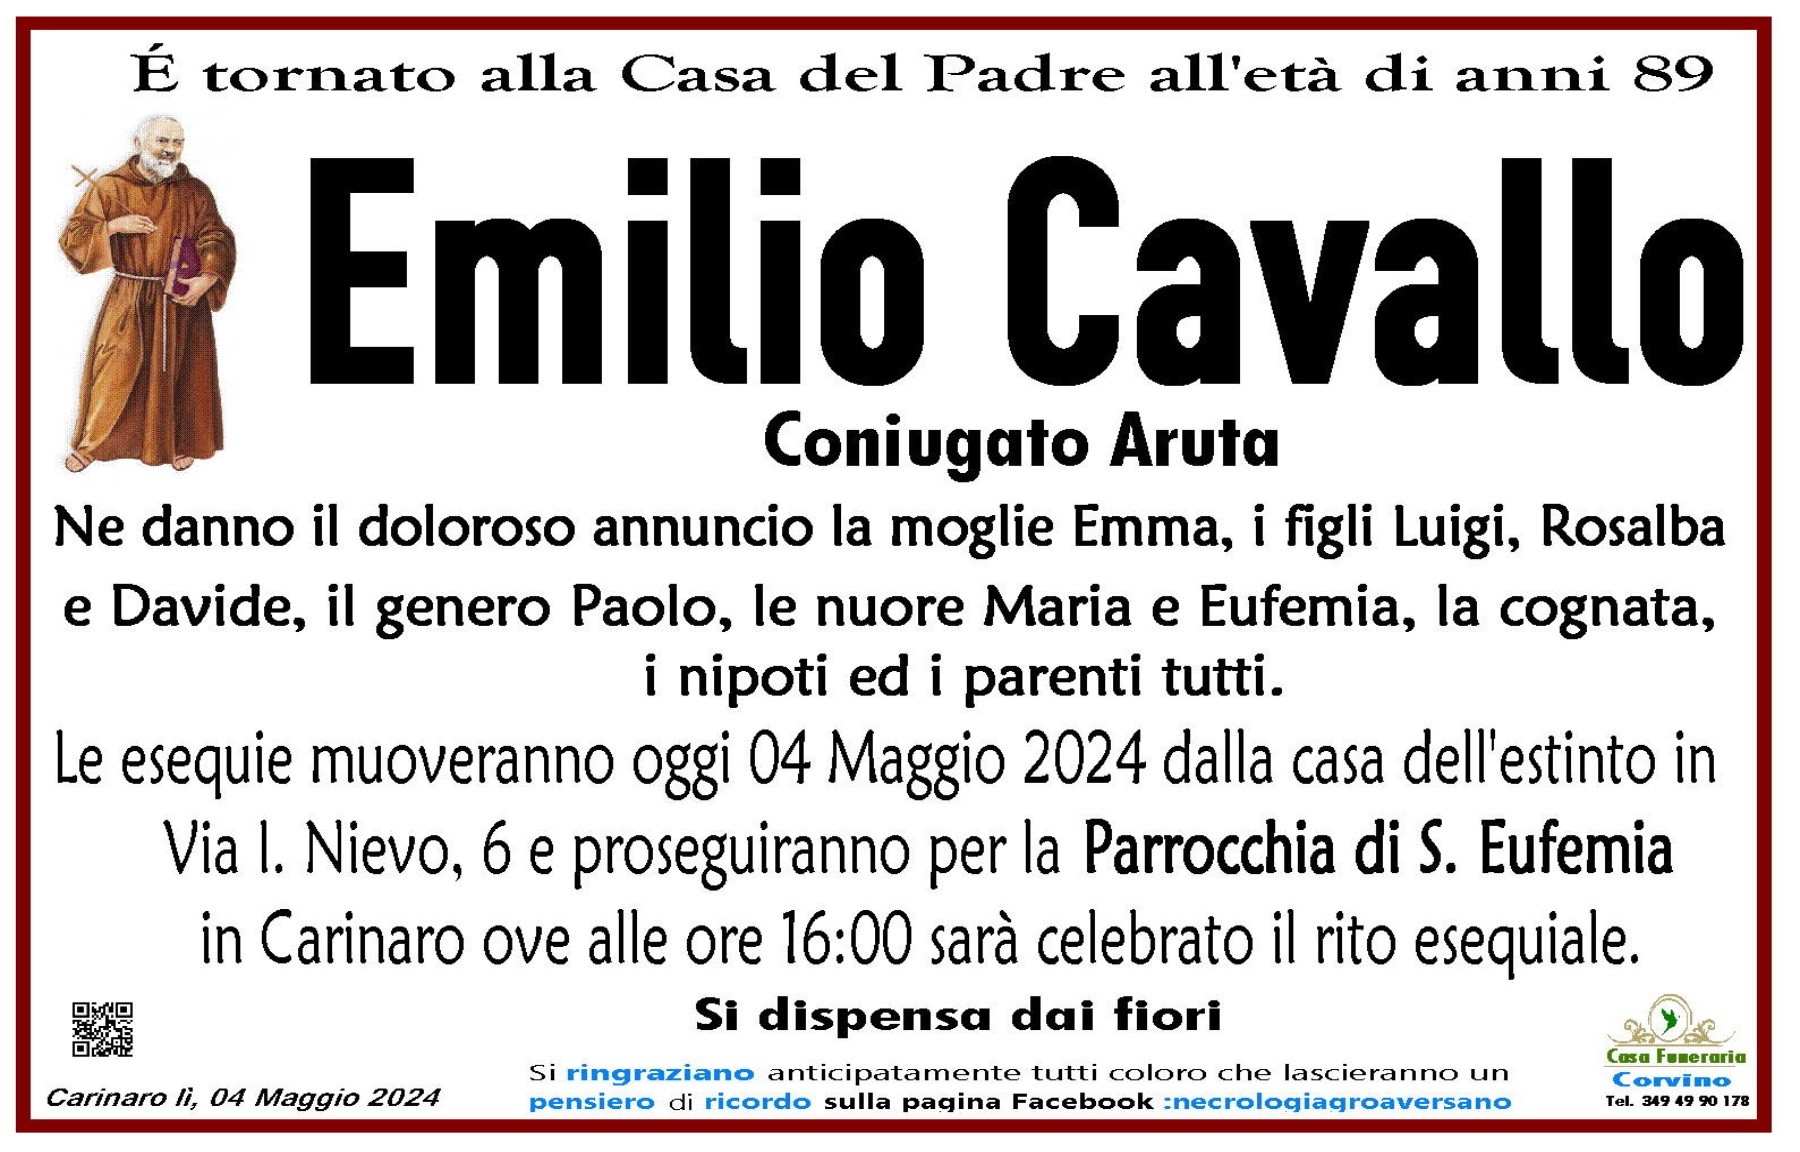 Emilio Cavallo